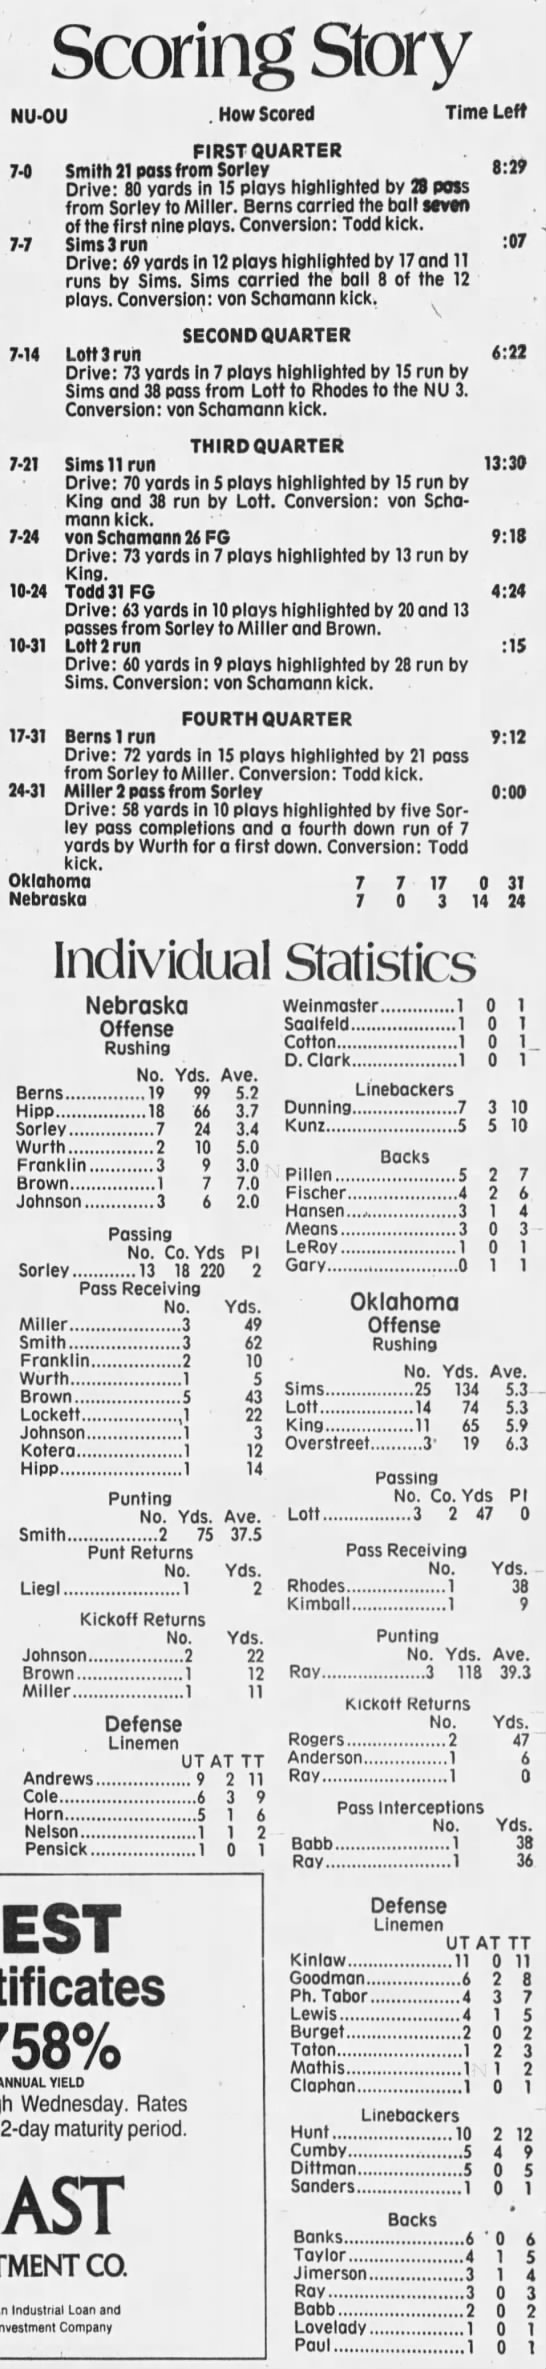 1979 Orange Bowl scoring - 